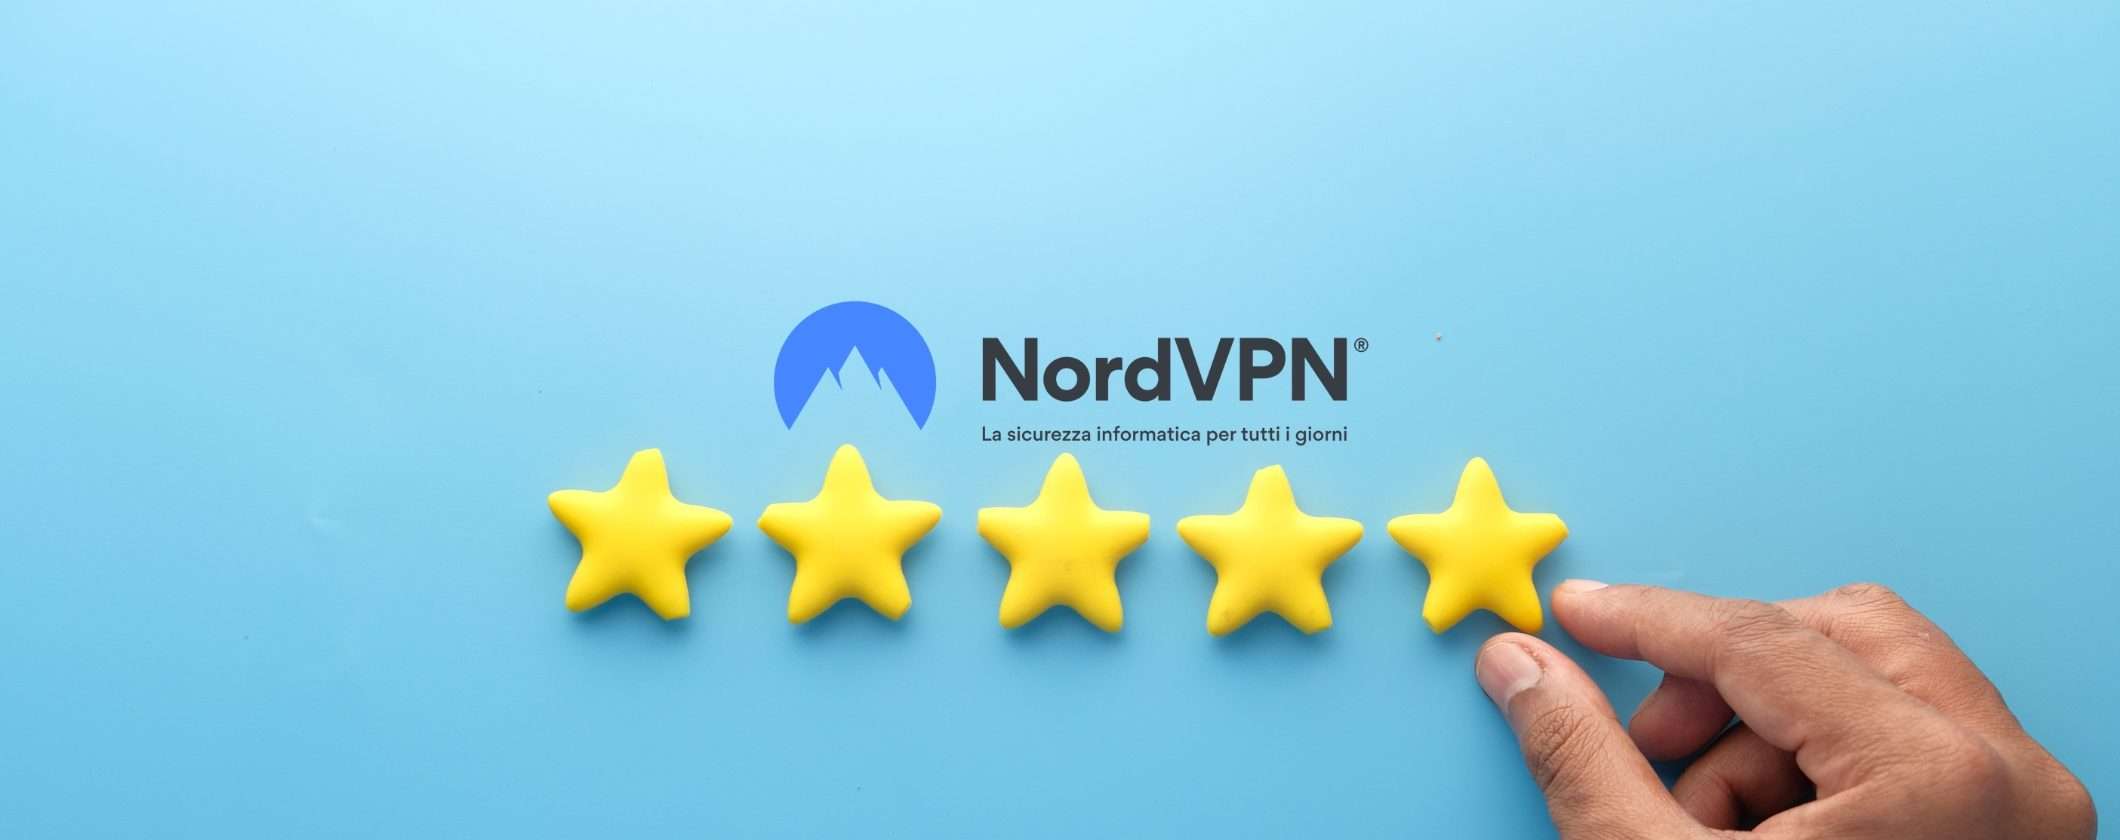 NordVPN è un totale successo: ecco cosa amiamo di questa VPN